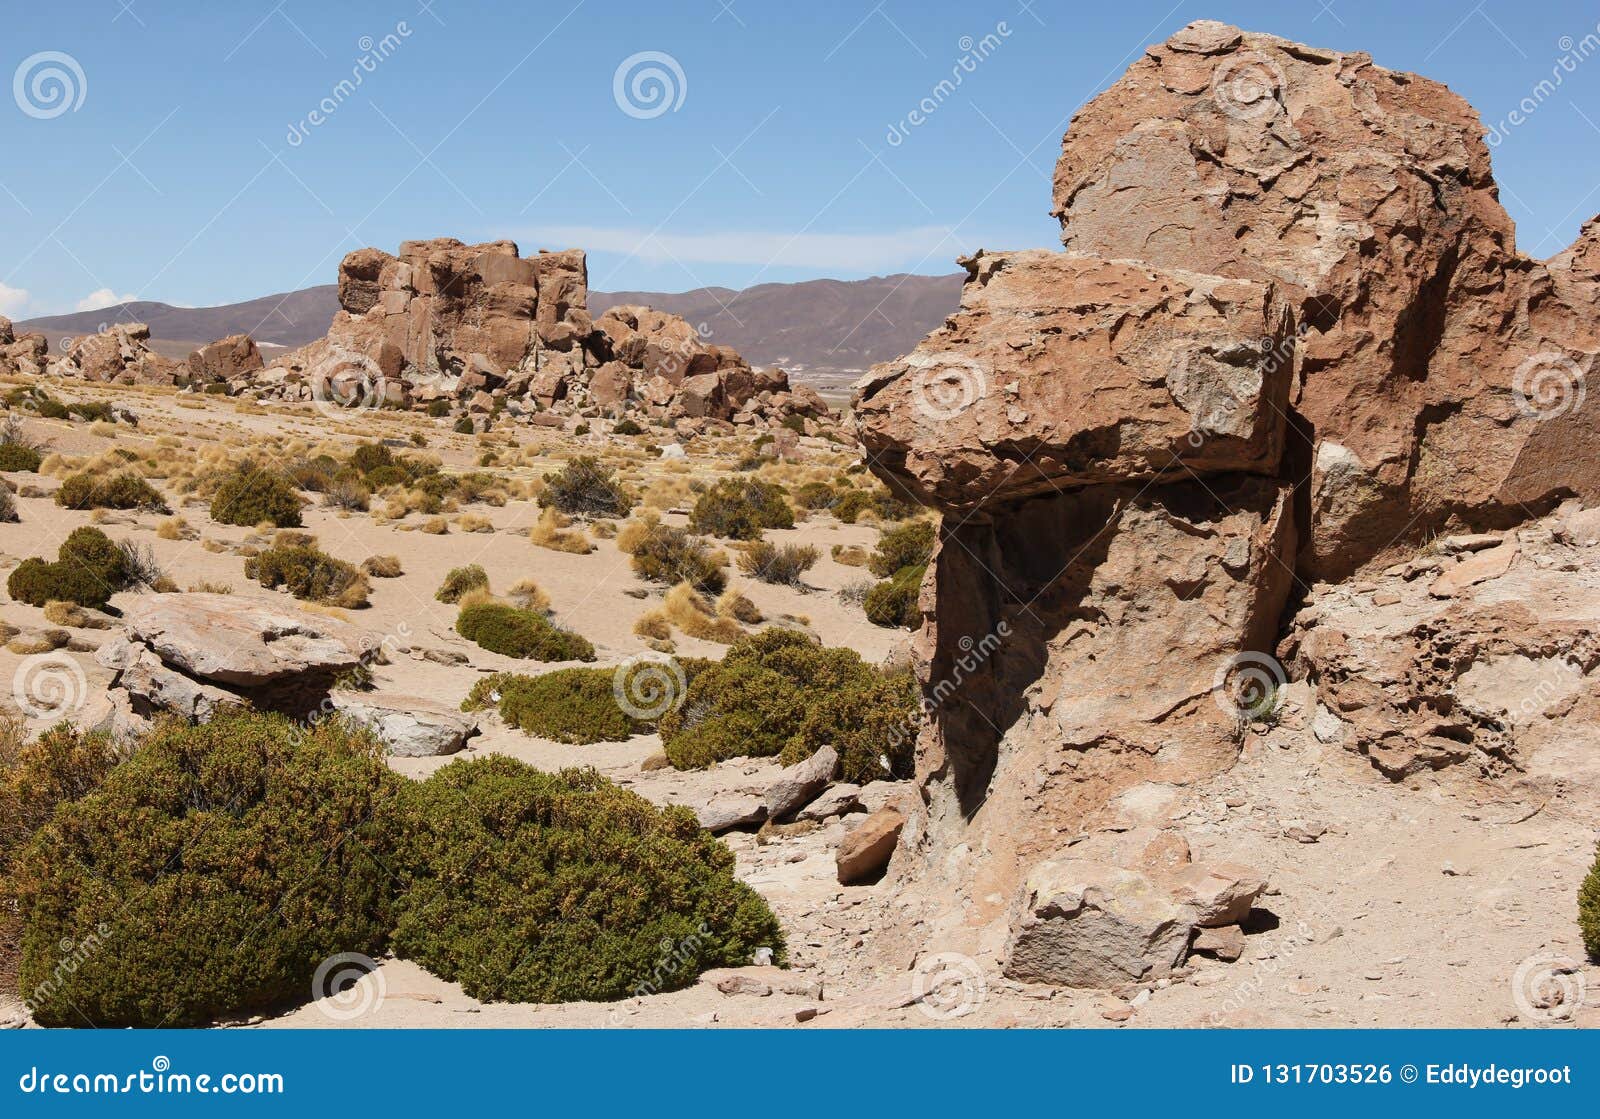 rock formations at valle de las rocas